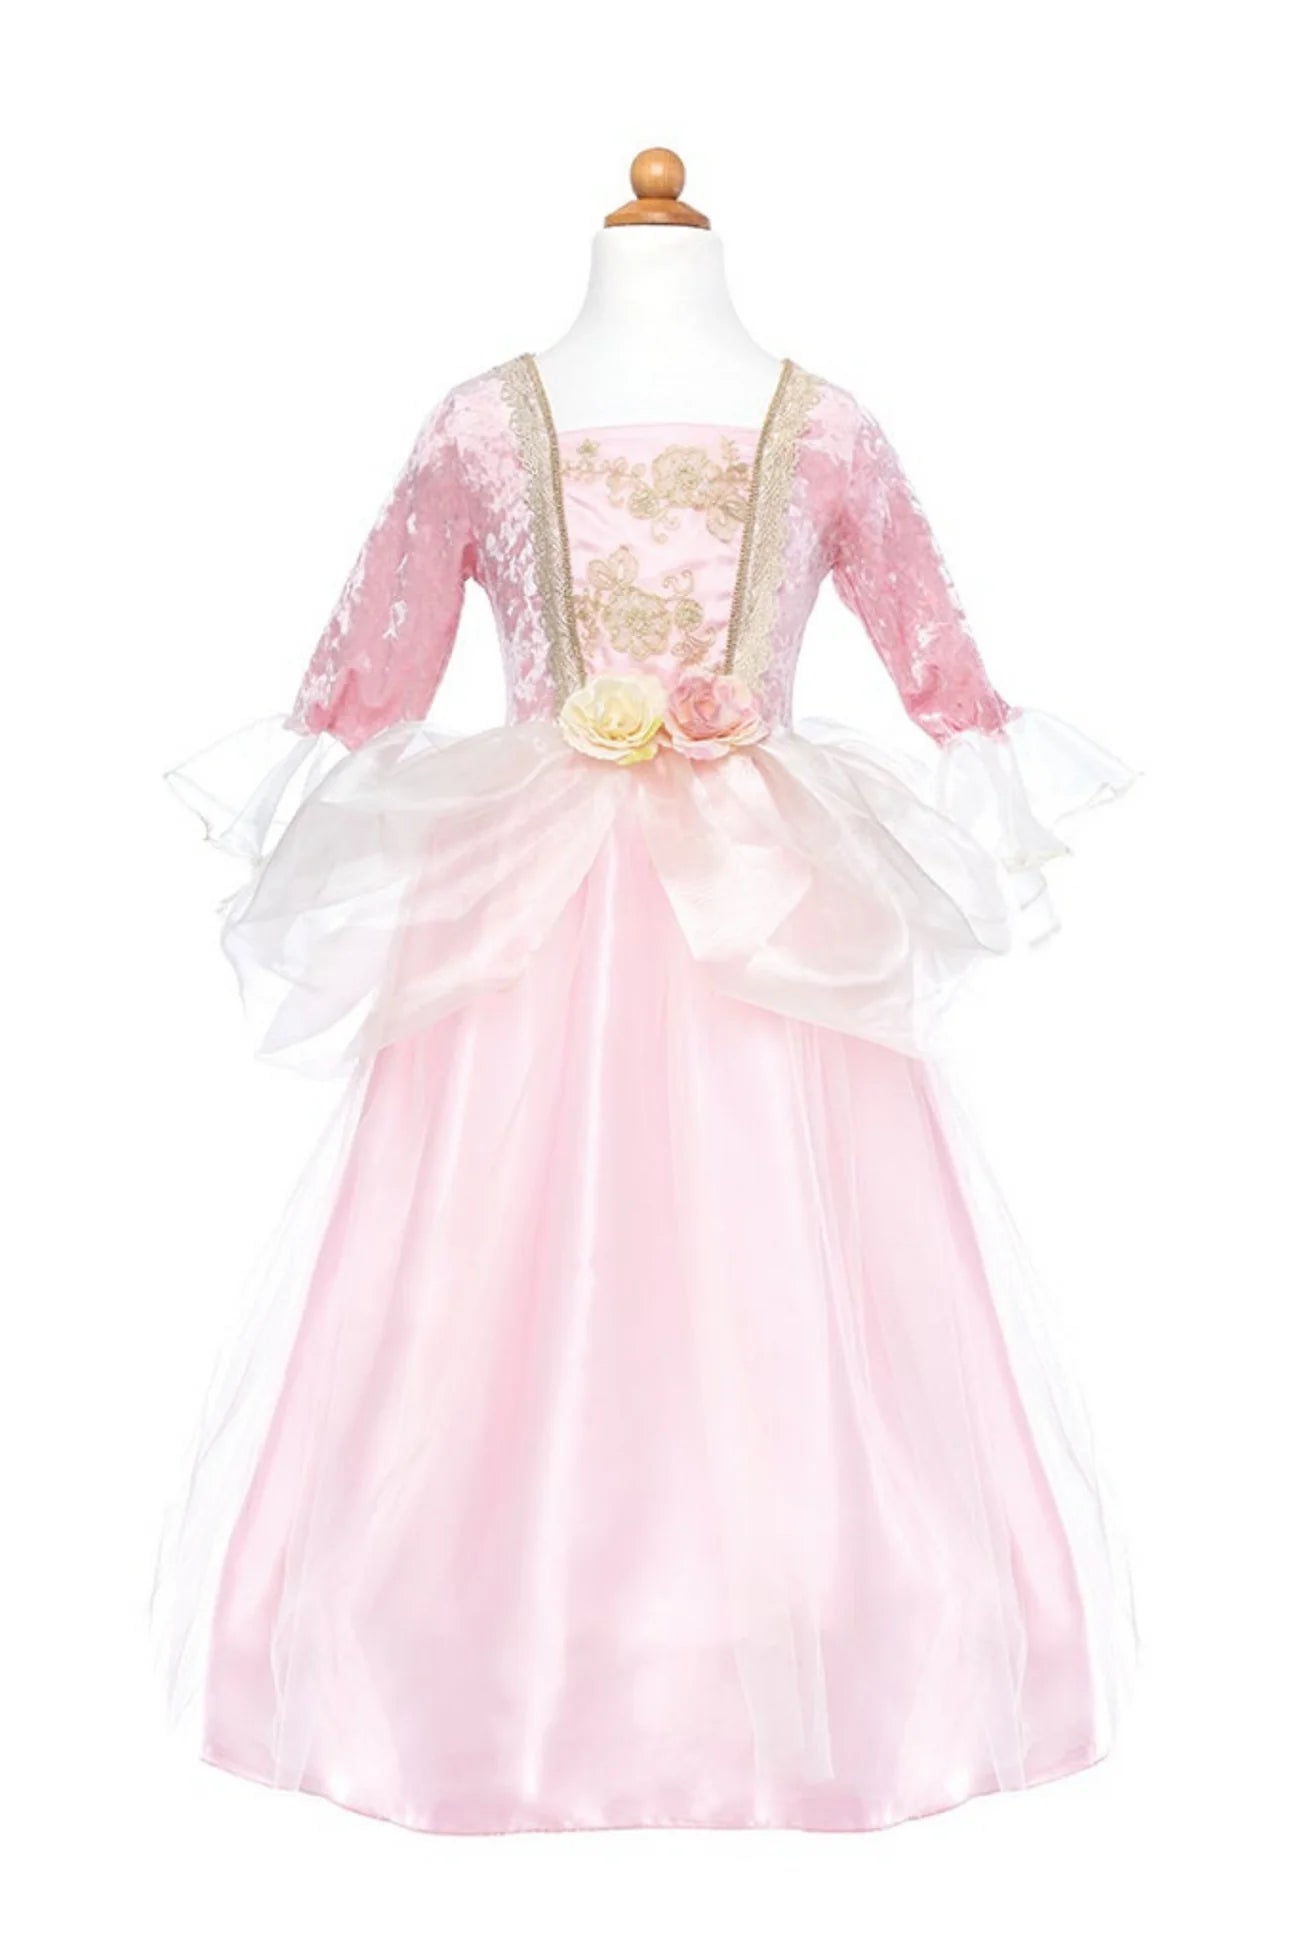 Prinsesse kjole, Pink Rose, 3-4 År, Great Pretenders